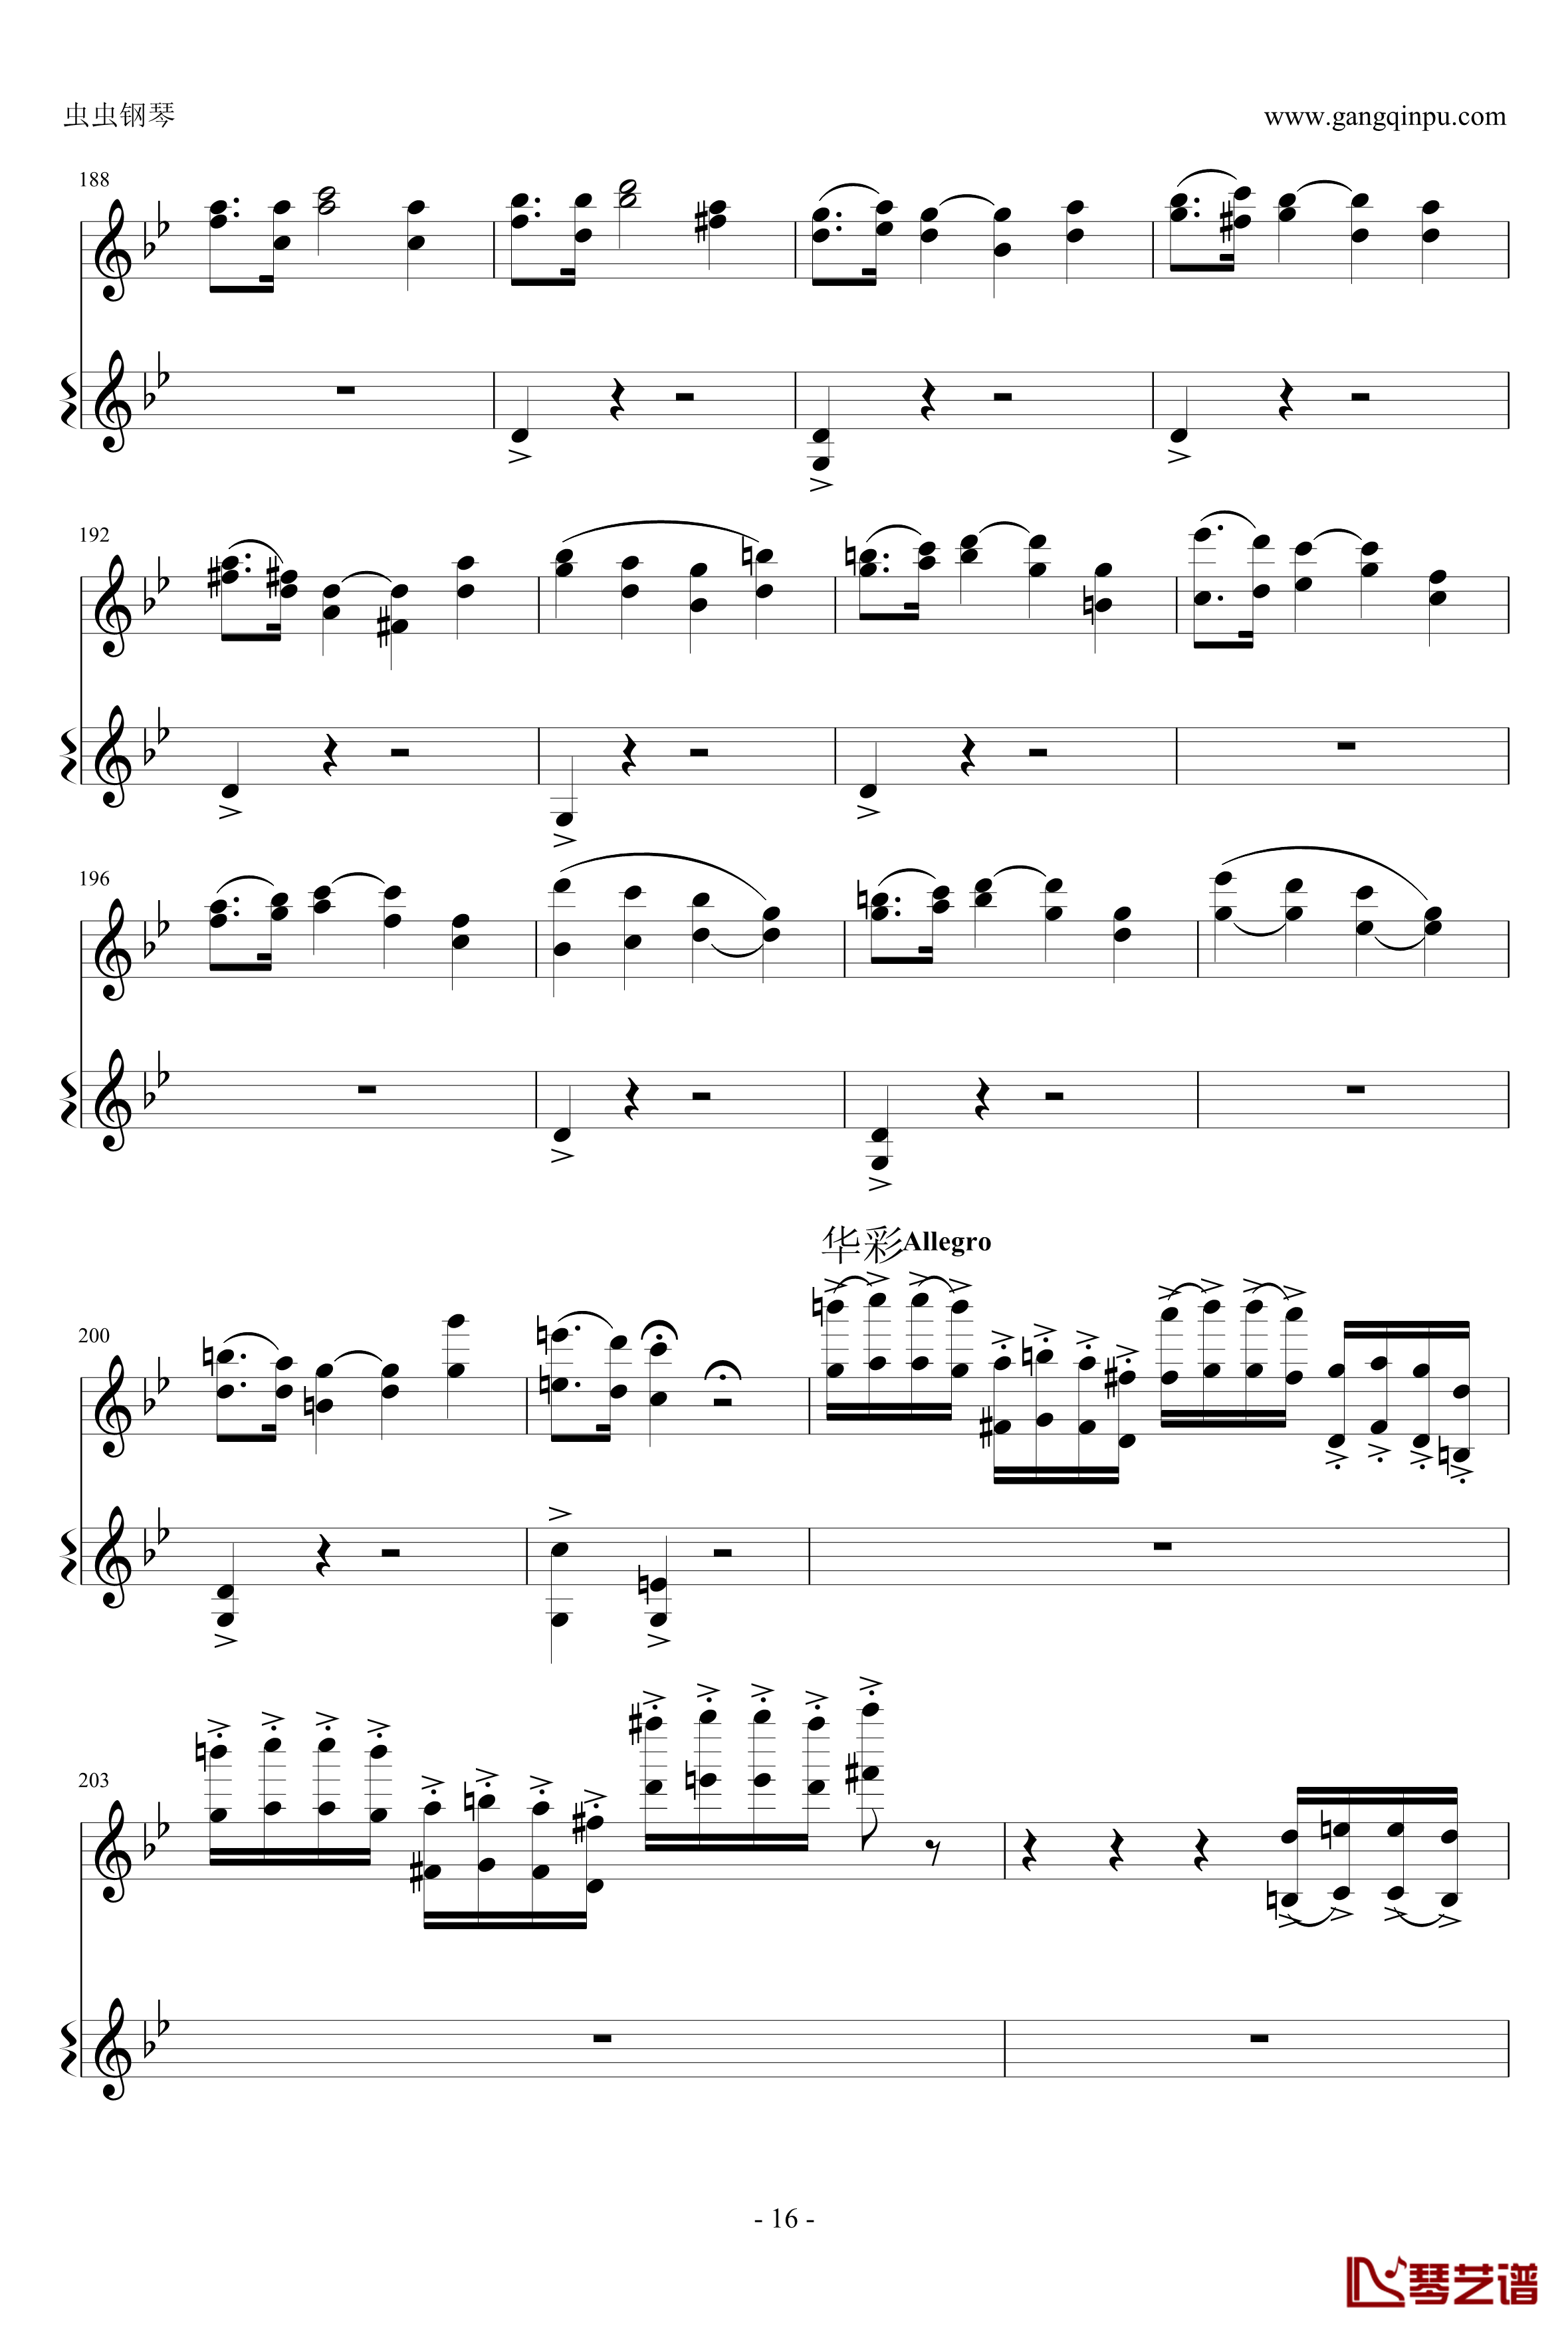 意大利国歌钢琴谱-变奏曲修改版-DXF16